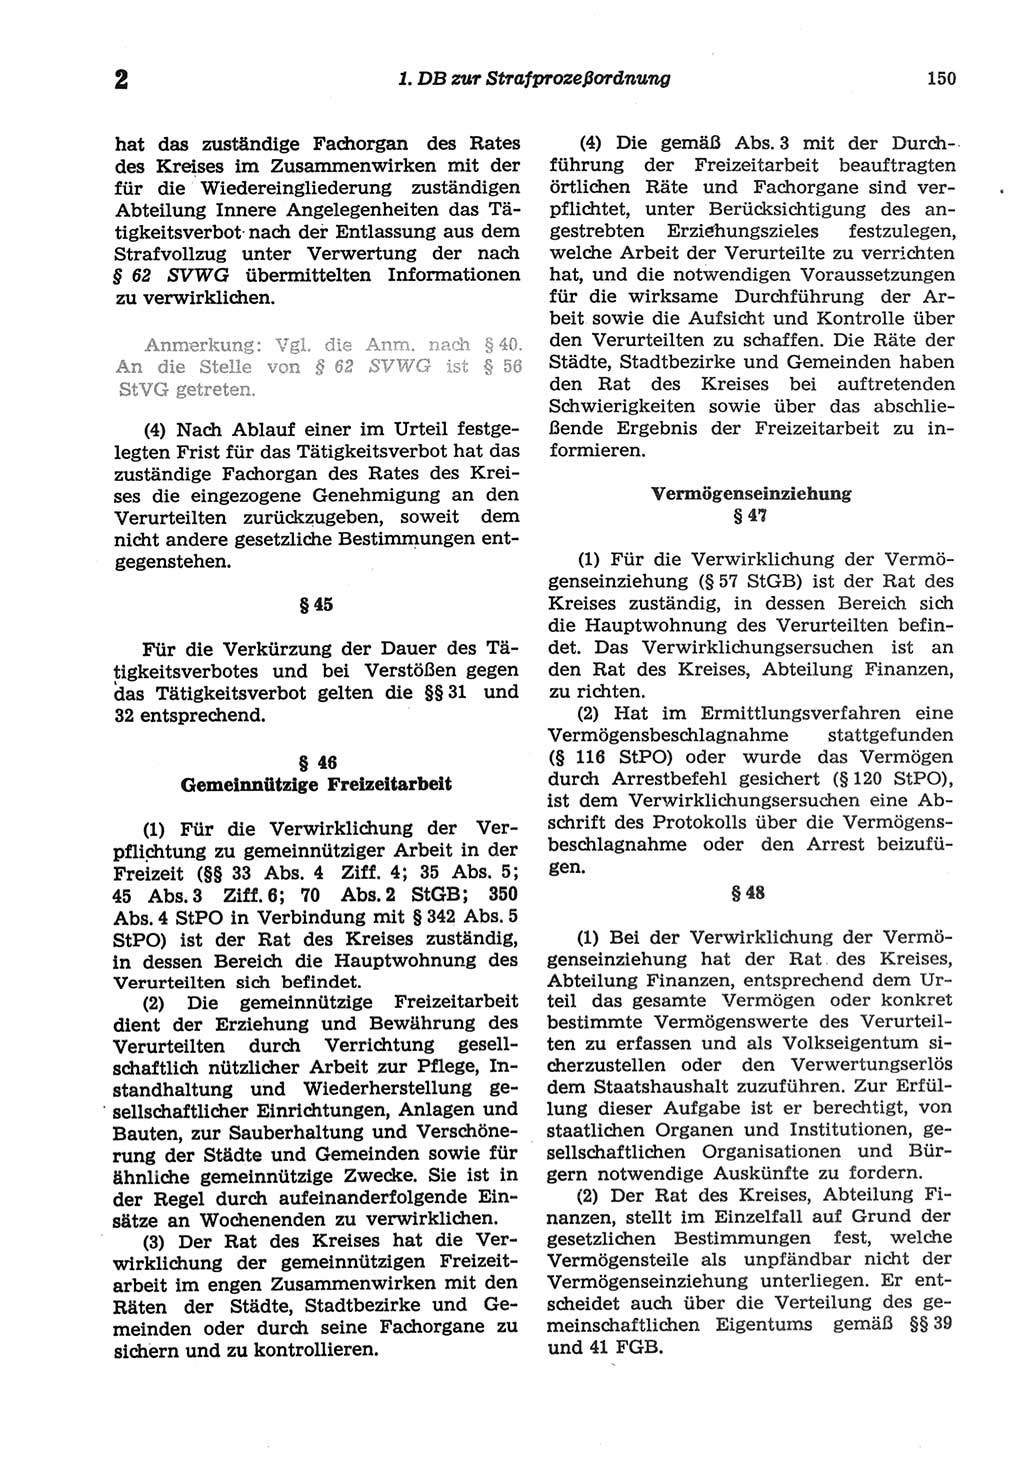 Strafprozeßordnung (StPO) der Deutschen Demokratischen Republik (DDR) sowie angrenzende Gesetze und Bestimmungen 1977, Seite 150 (StPO DDR Ges. Best. 1977, S. 150)